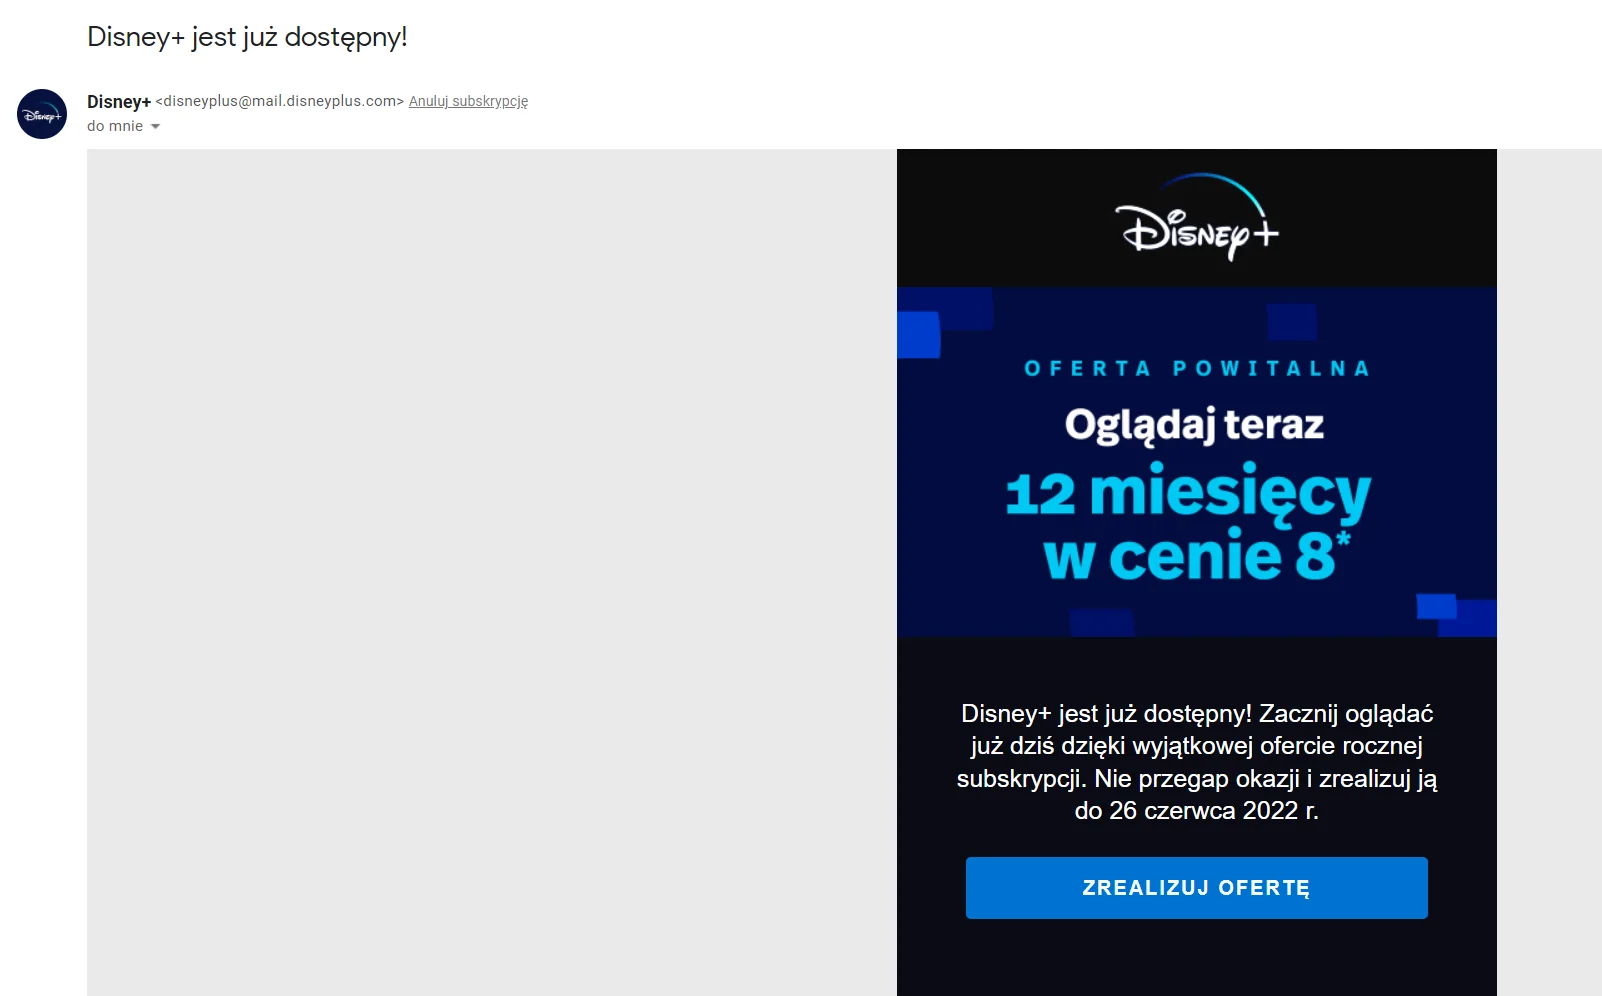 Wiadomość z ofertą powitalną Disney Plus